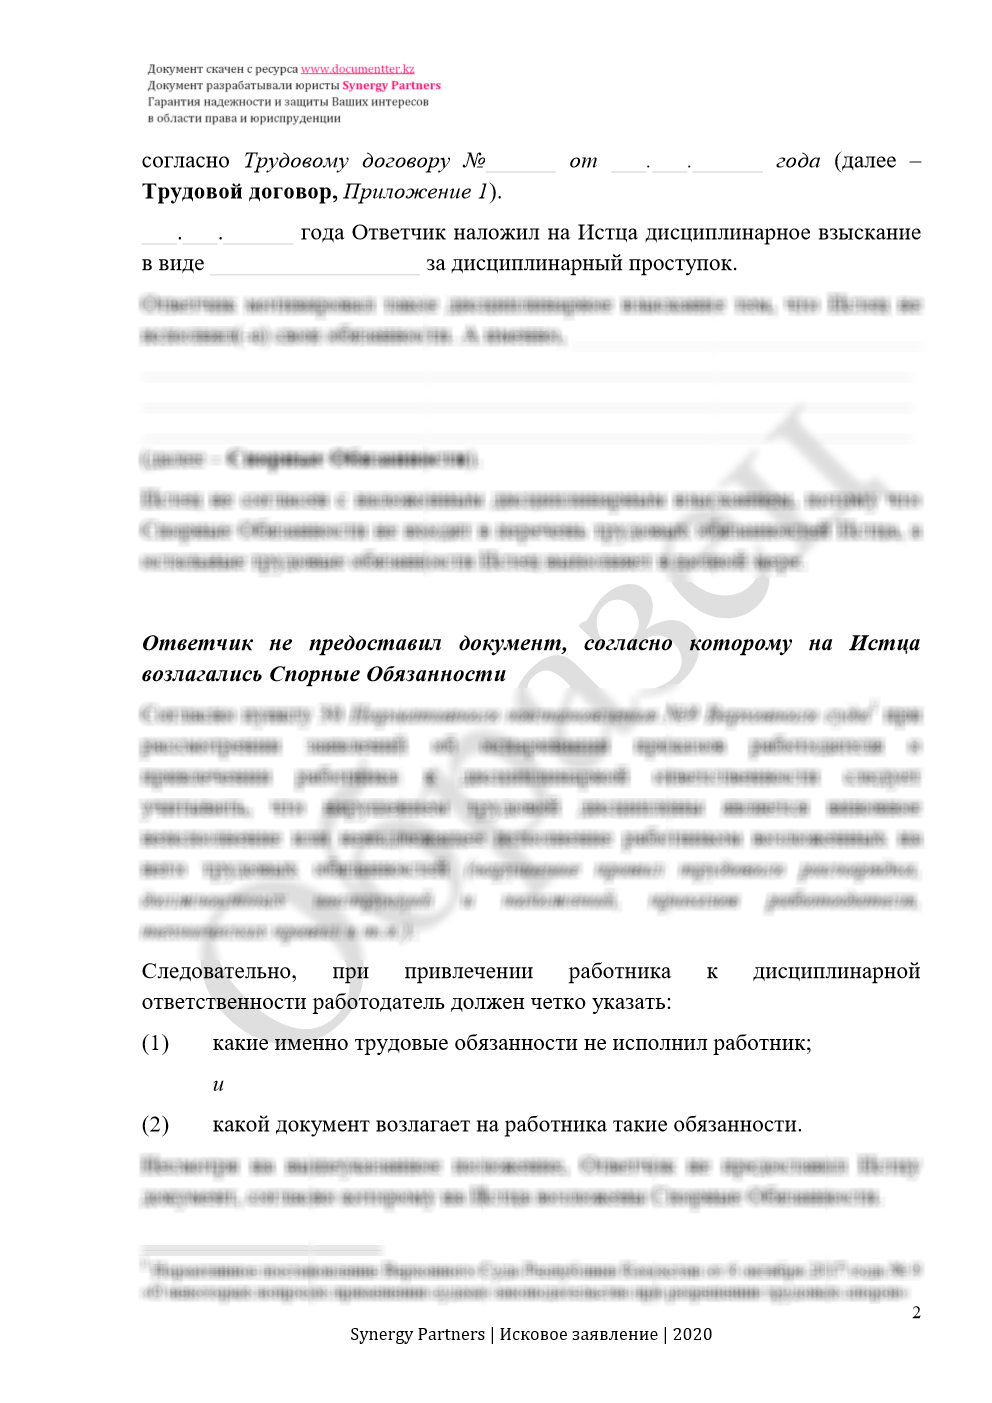 Иск, если незаконно наложили дисциплинарное взыскание | documentterkz.com в Казахстане